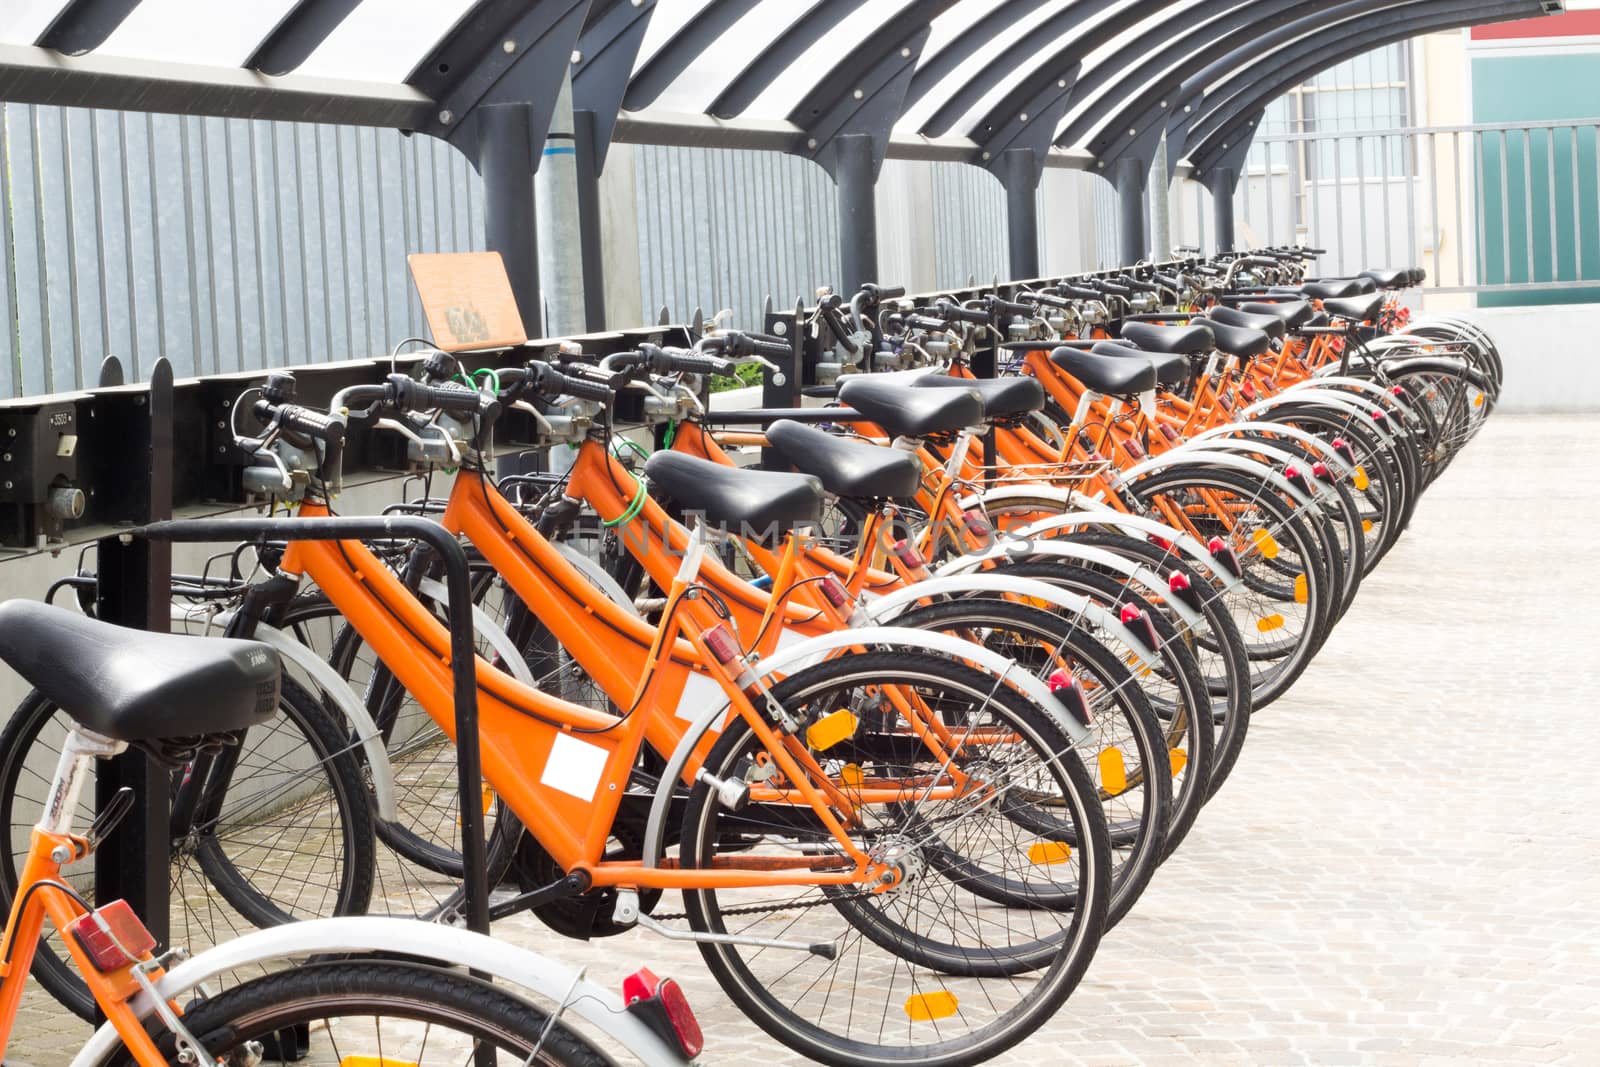 Group of orange bikes still in storage by Carbonas